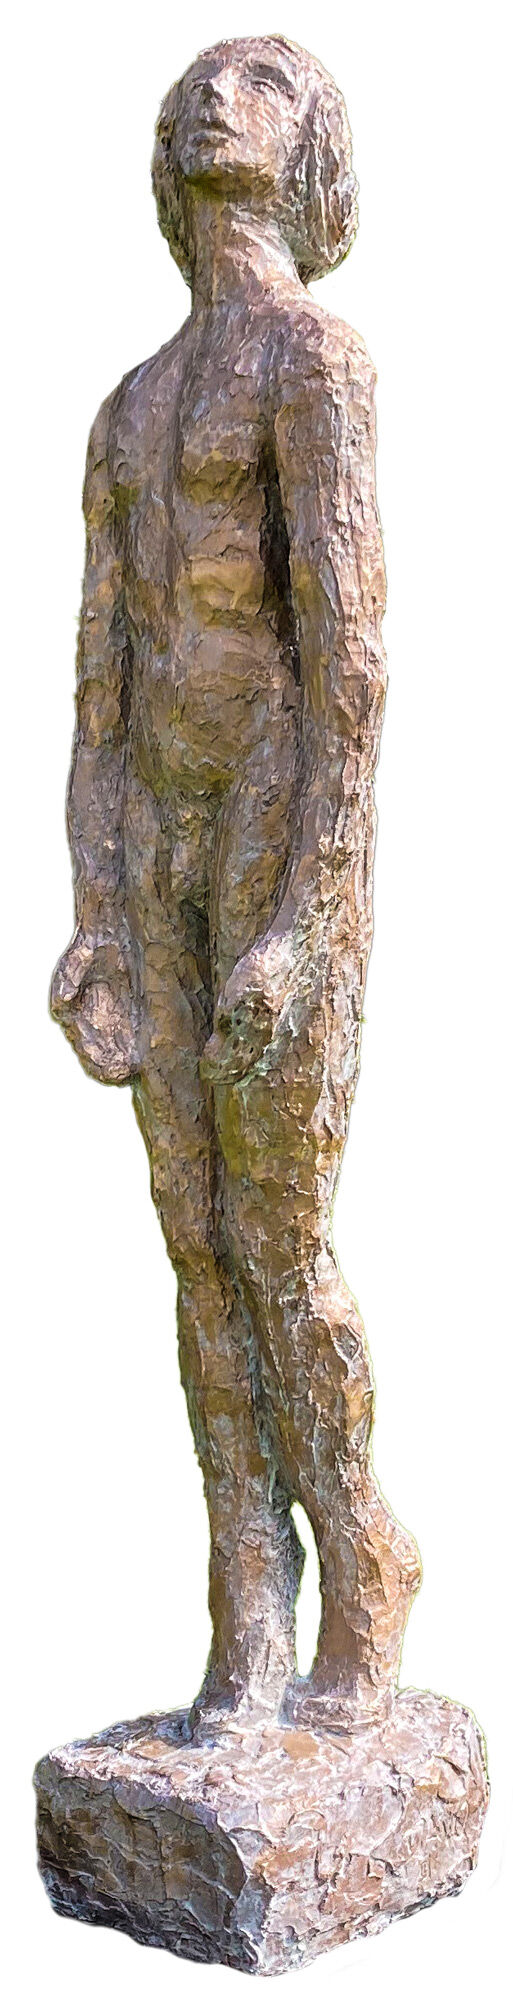 Skulptur "Pina - Fuldmåne" (2019), bronze von Dagmar Vogt